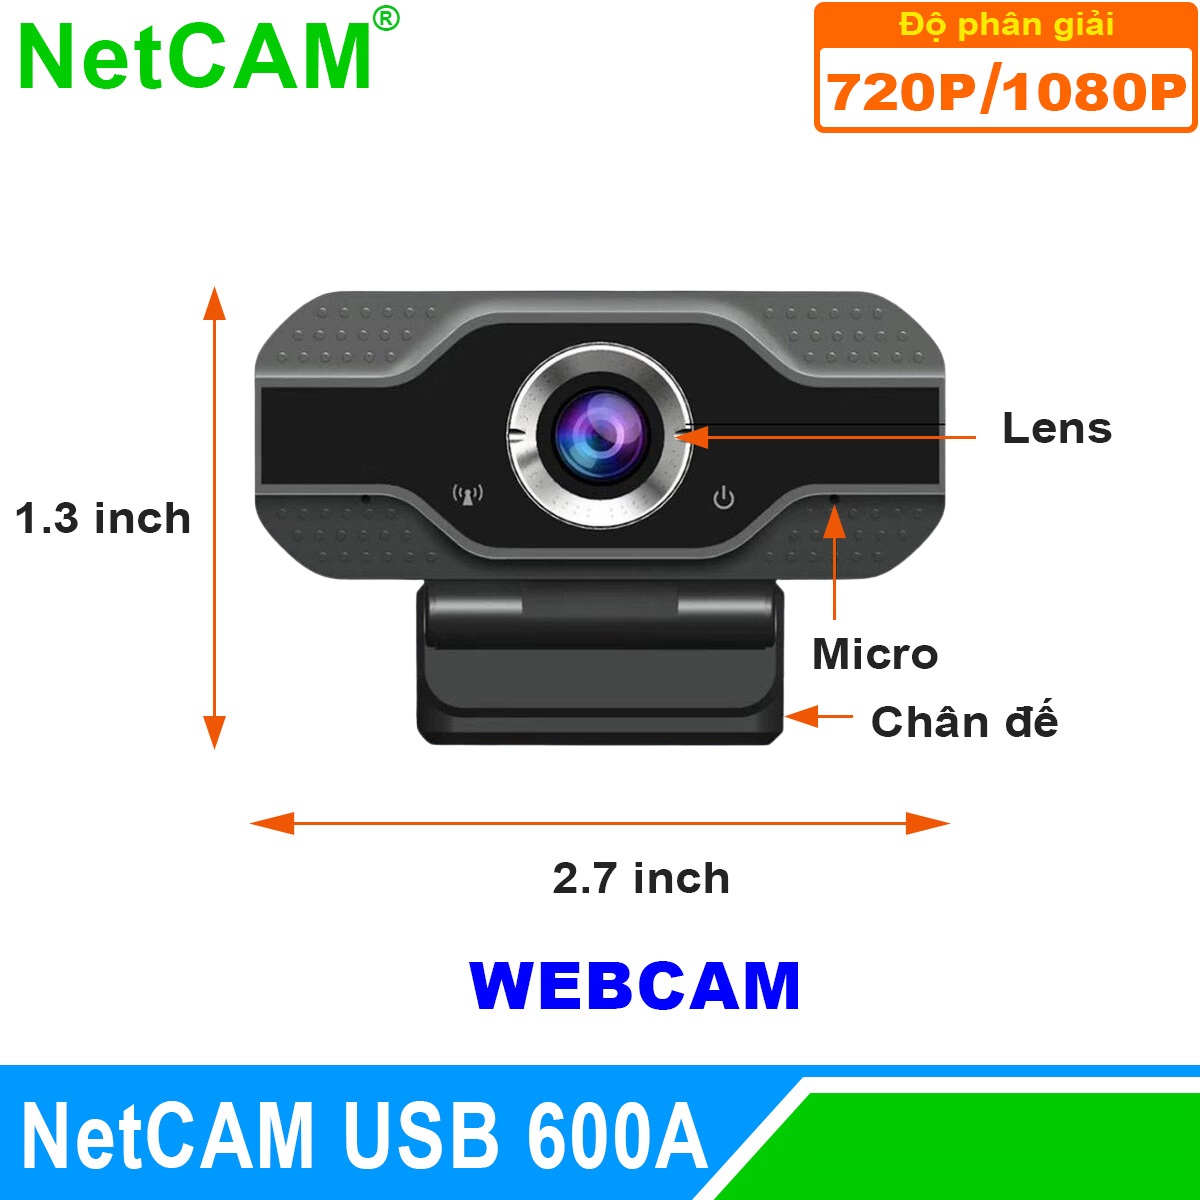 Webcam NetCAM USB 600A độ phân giải 1080P - Hàng Chính Hãng